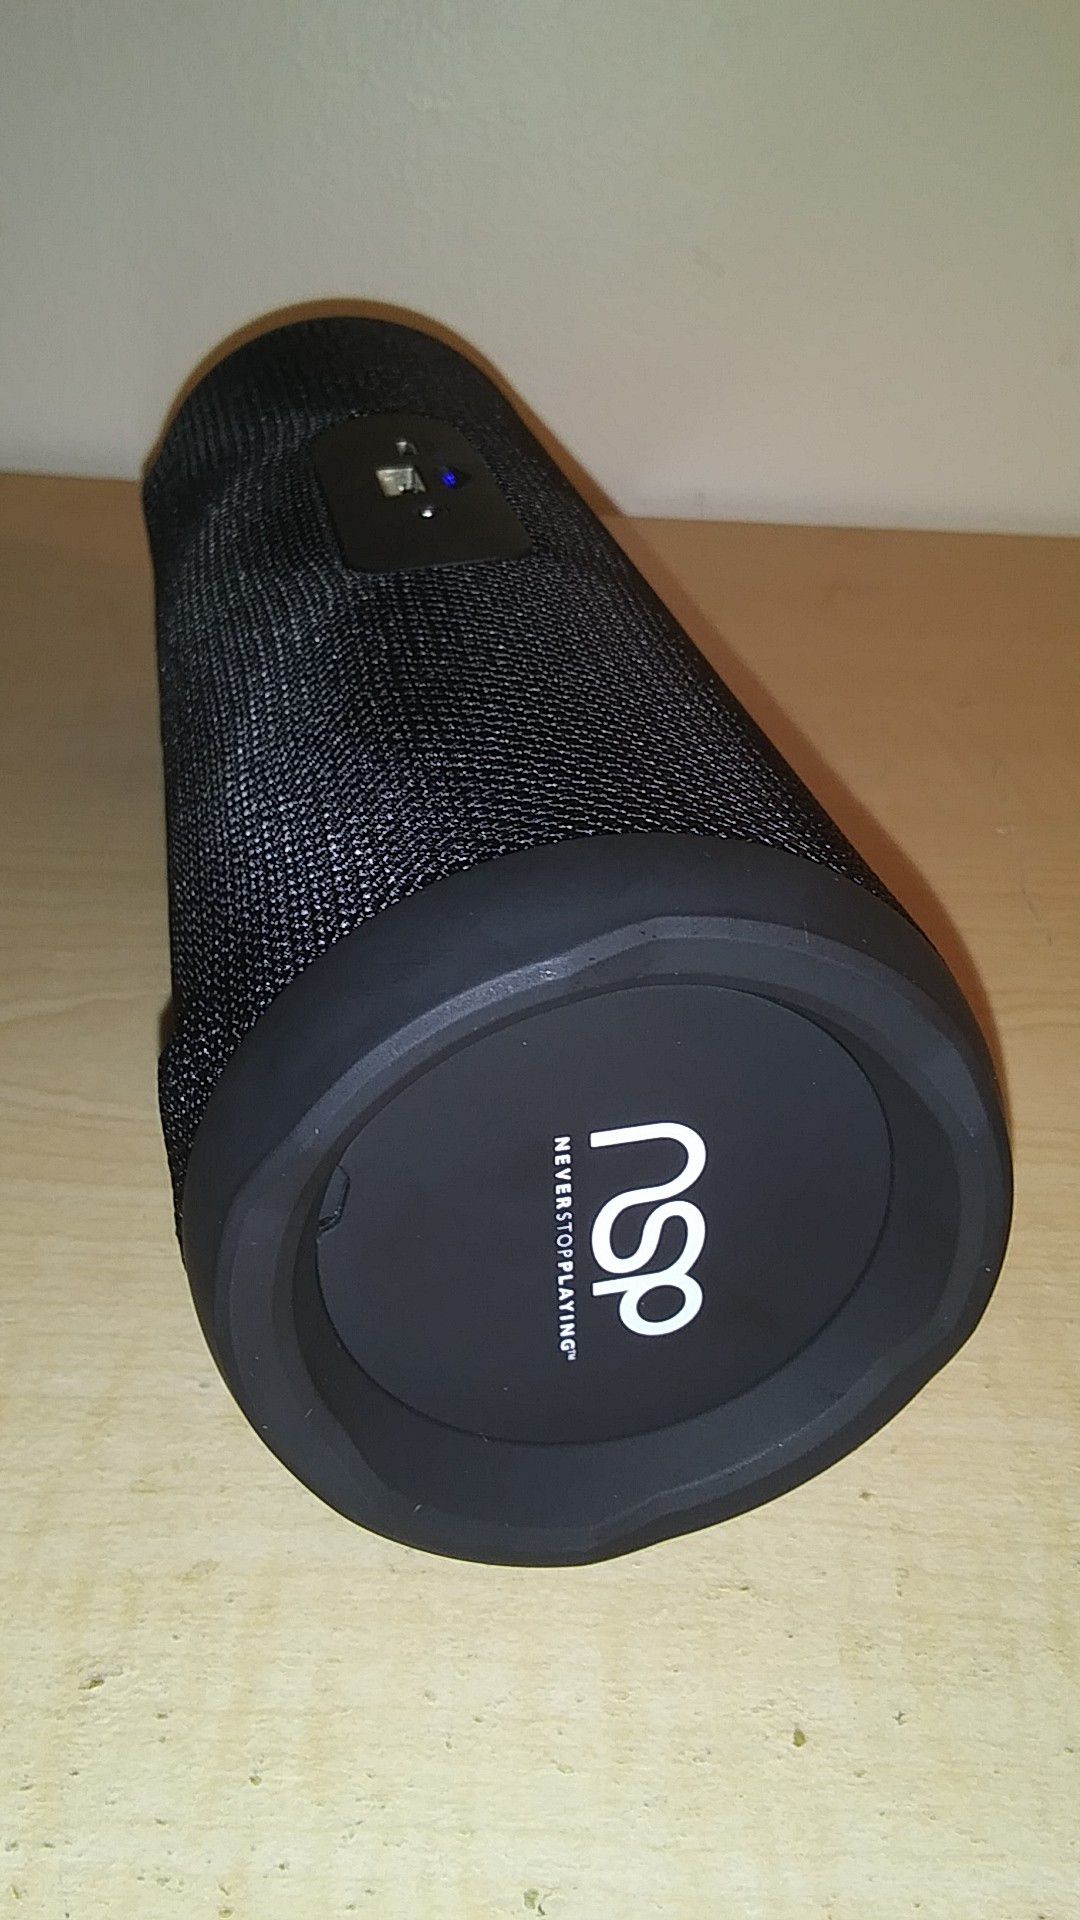 Nsp Bluetooth speaker